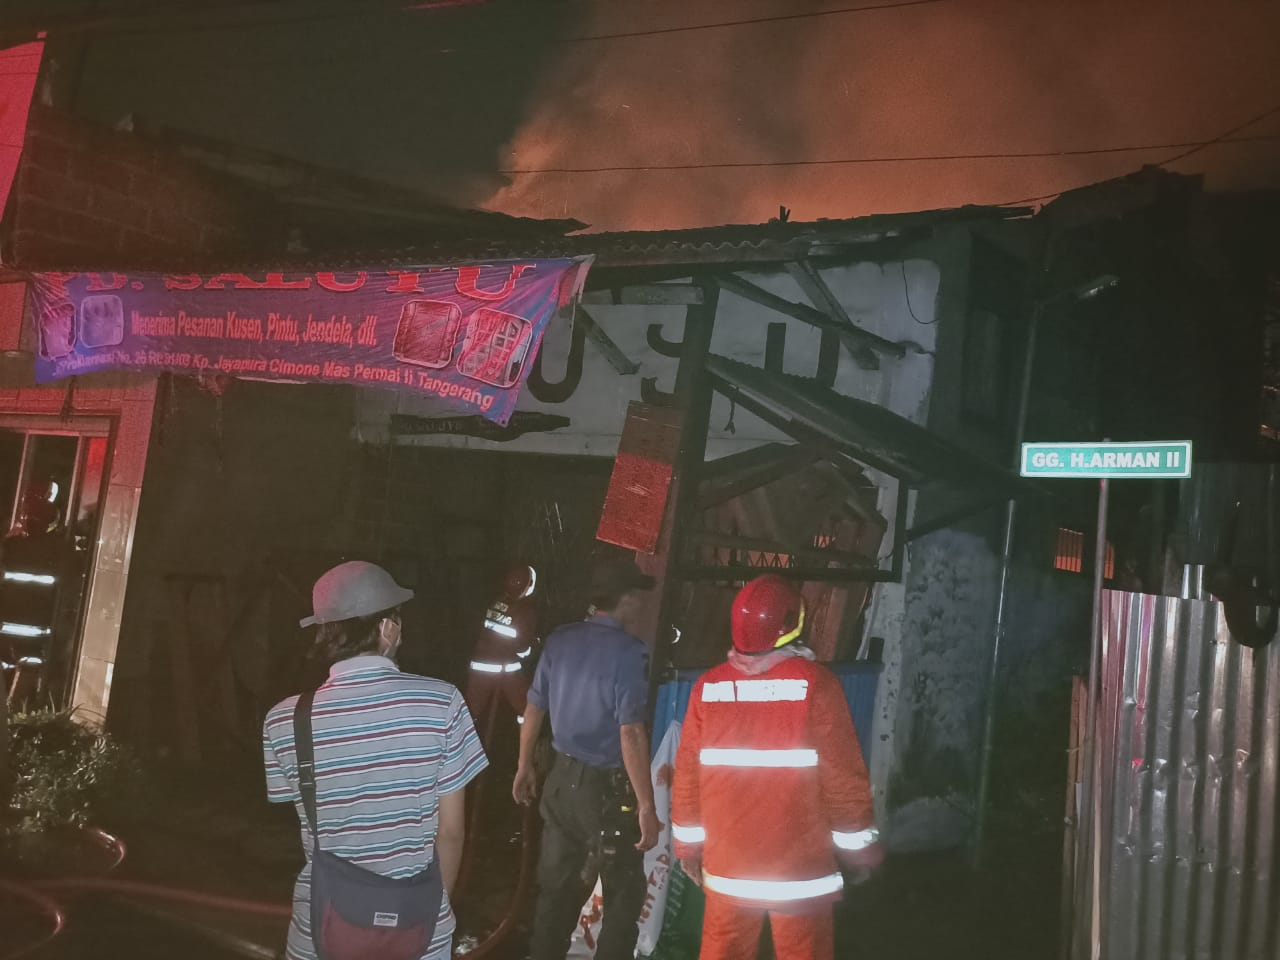 Terjadi kebakaran di Jalan Proklamasi RT 1/3, Kelurahan Cimone Jaya, Kecamatan Karawaci, Kota Tangerang pukul 00.25 WIB dini hari.